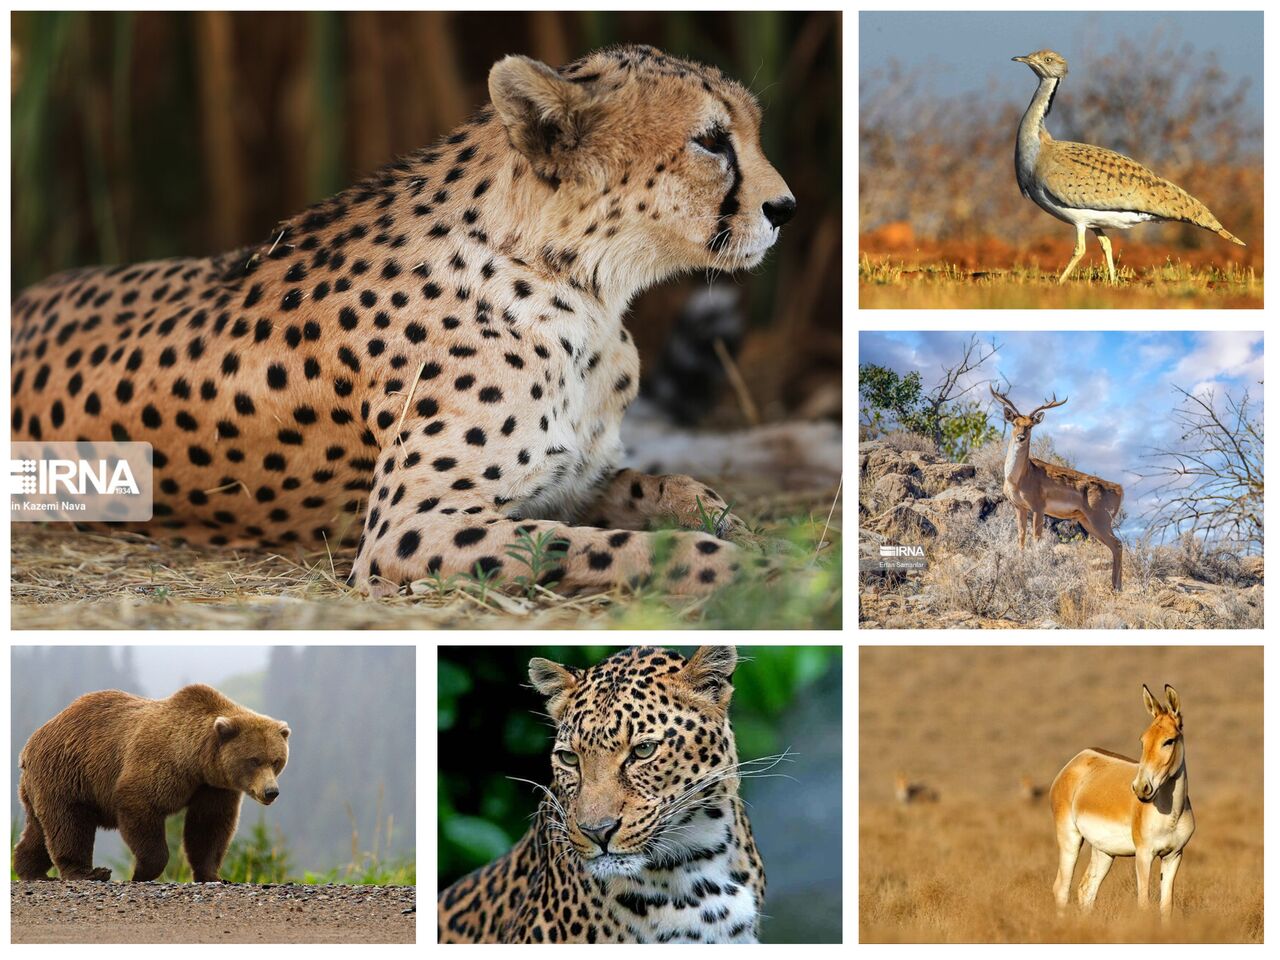 ۸۶ گونه جانوری کشور در معرض خطر انقراض/۲۳ گونه برنامه عمل دارد